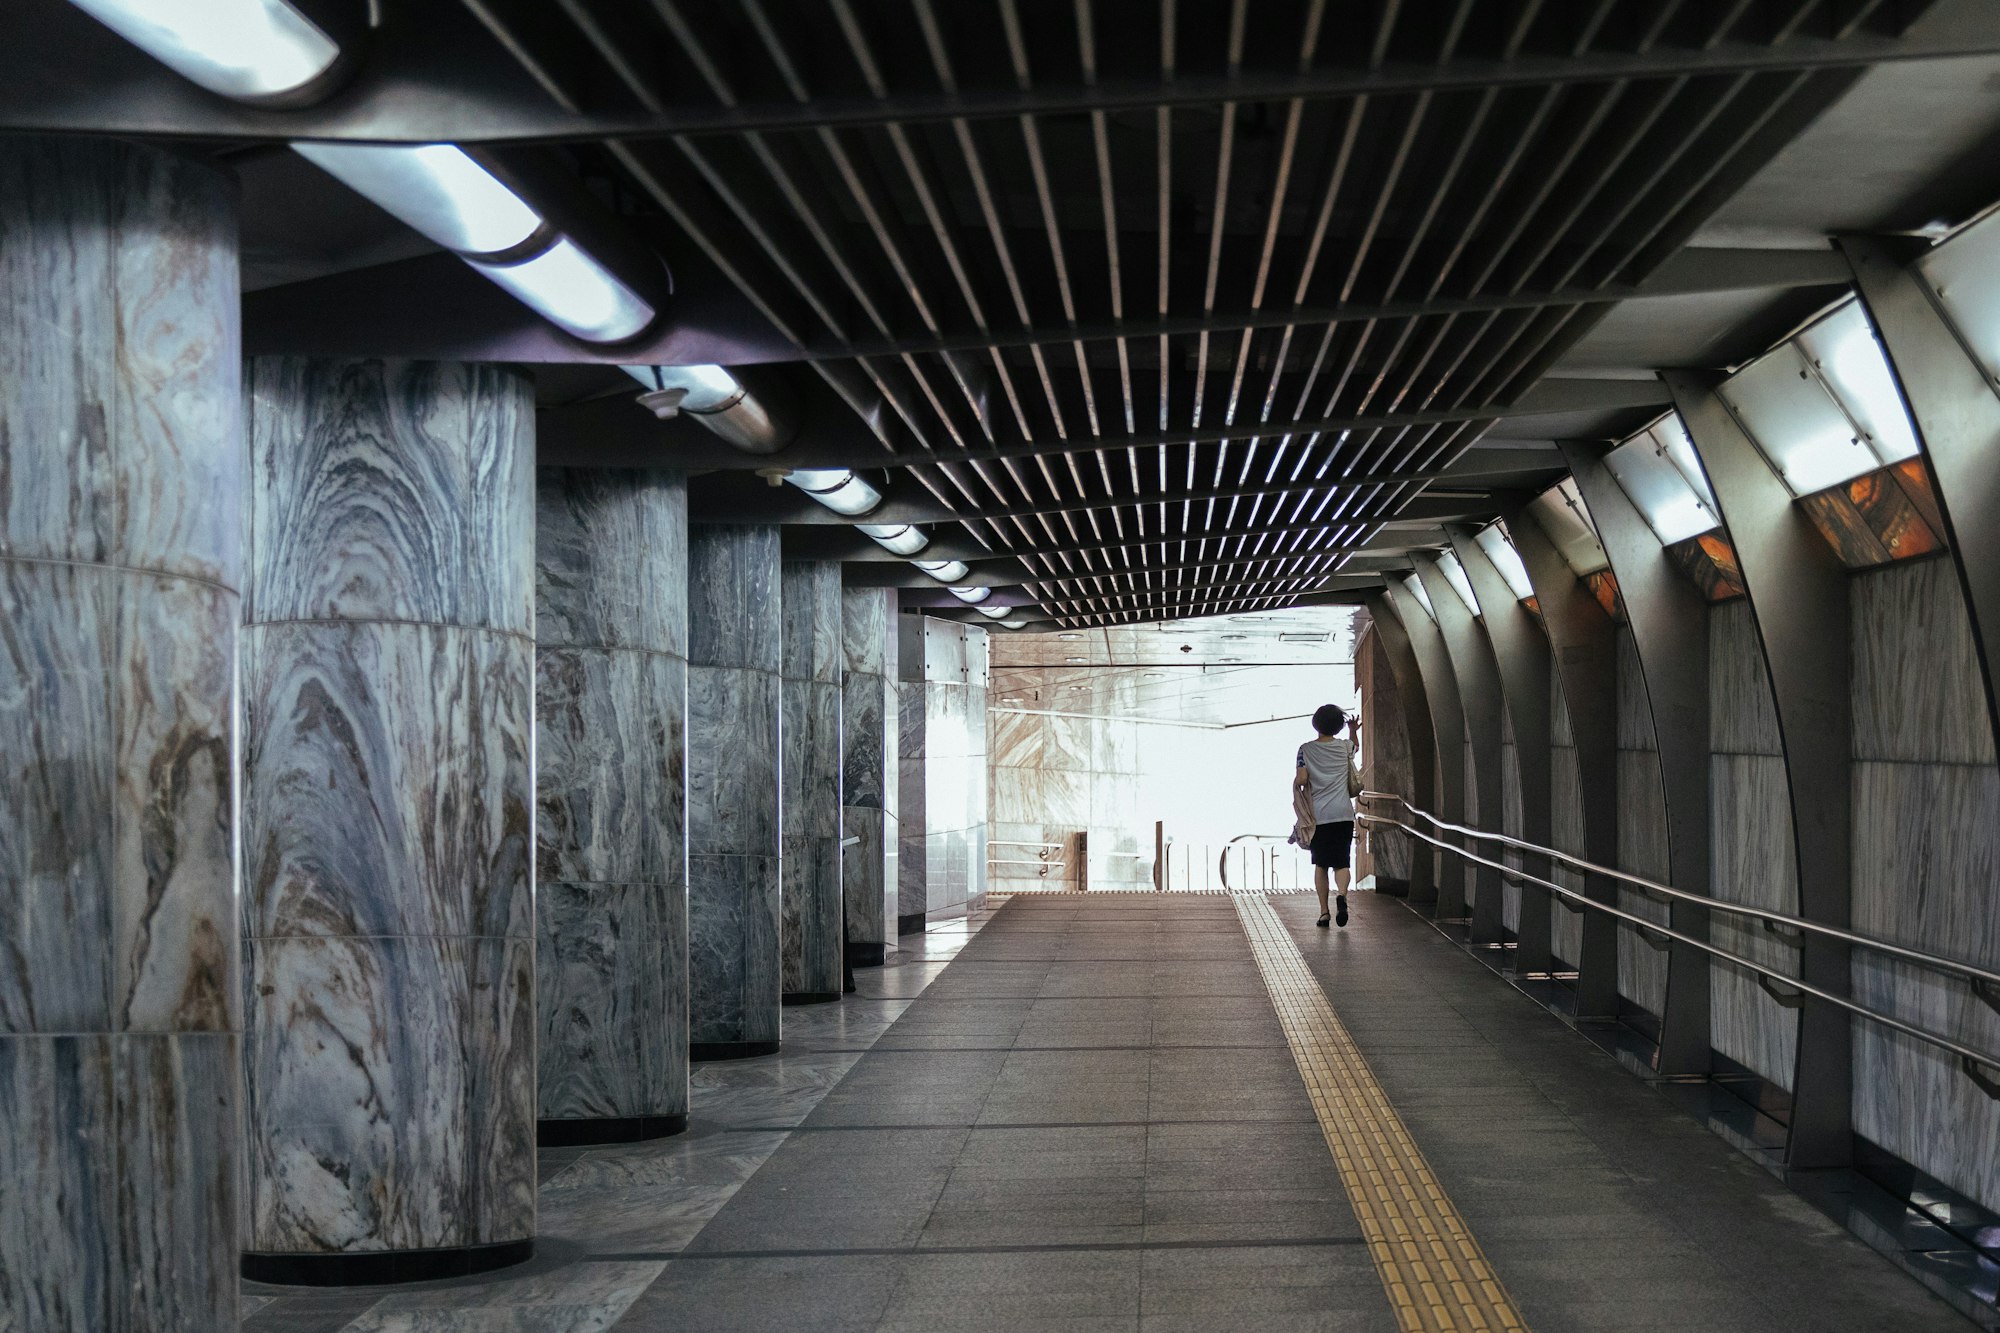 Seoul's Efficient Metro System